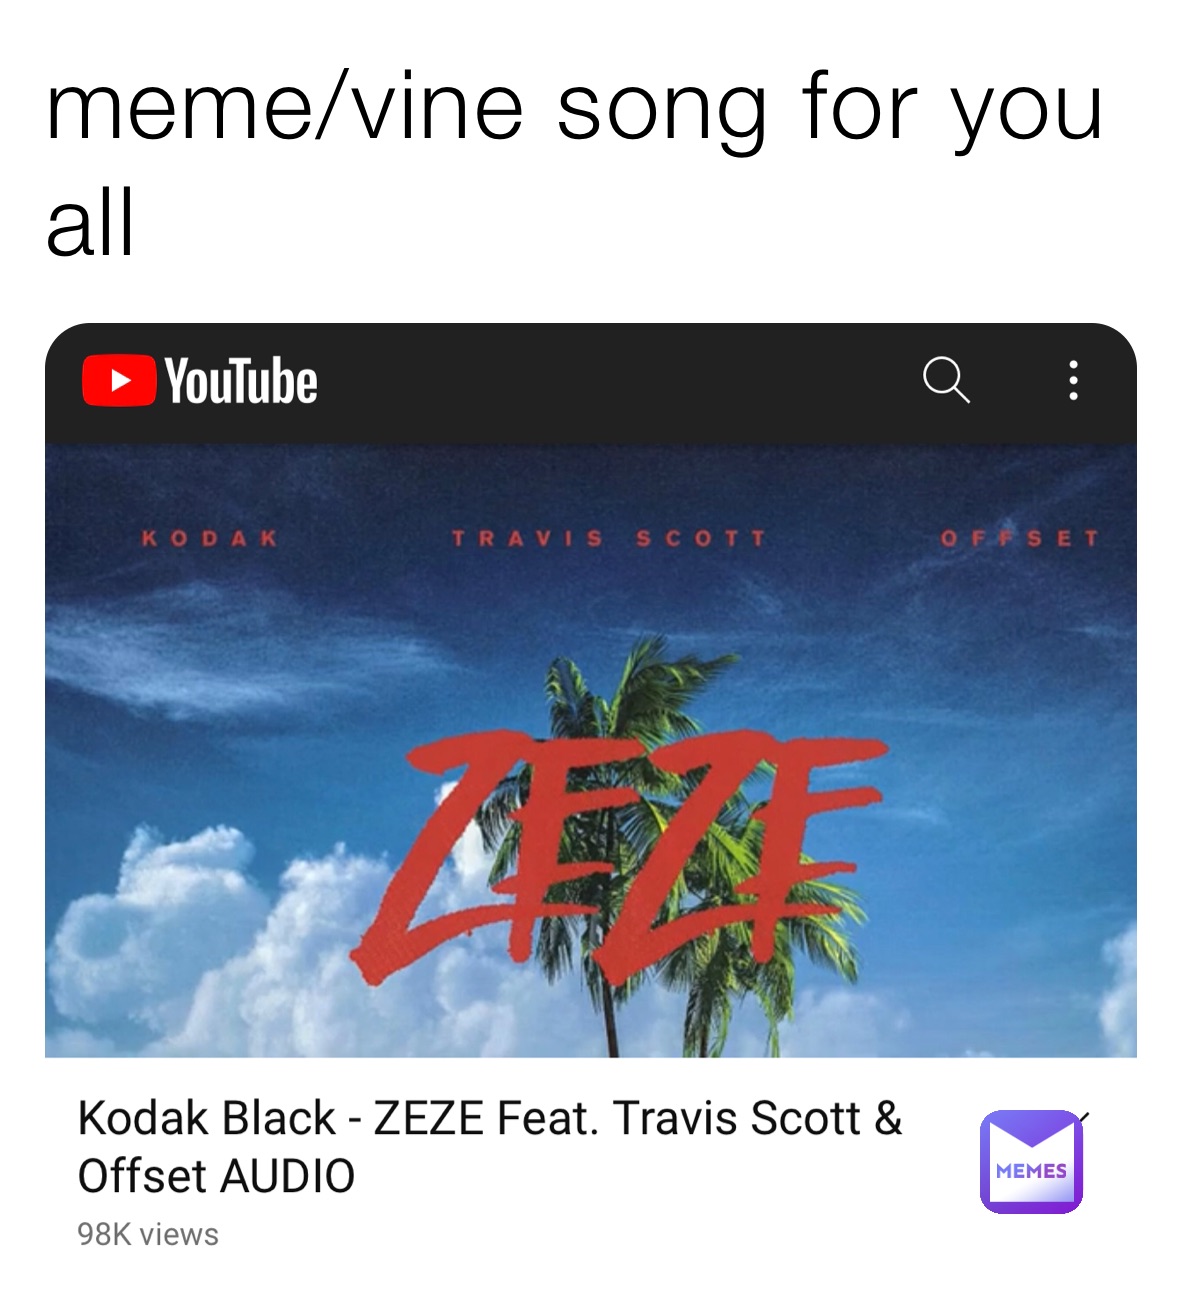 meme/vine song for you all